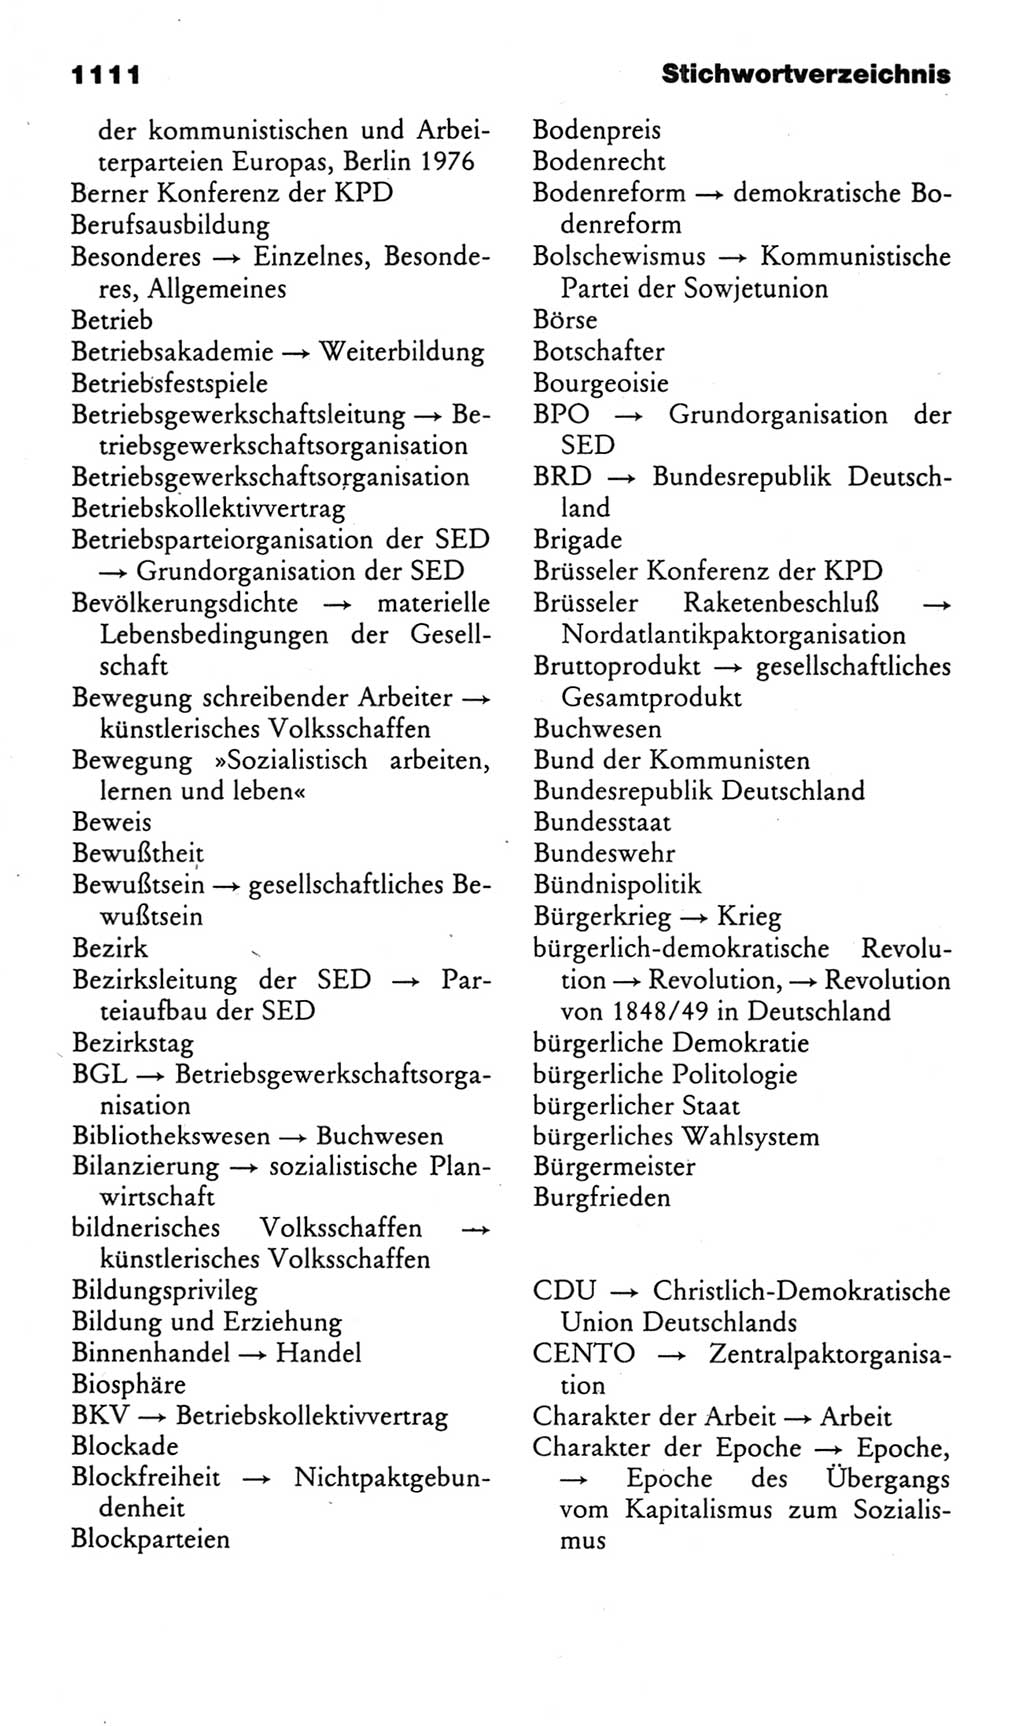 Kleines politisches Wörterbuch [Deutsche Demokratische Republik (DDR)] 1985, Seite 1111 (Kl. pol. Wb. DDR 1985, S. 1111)